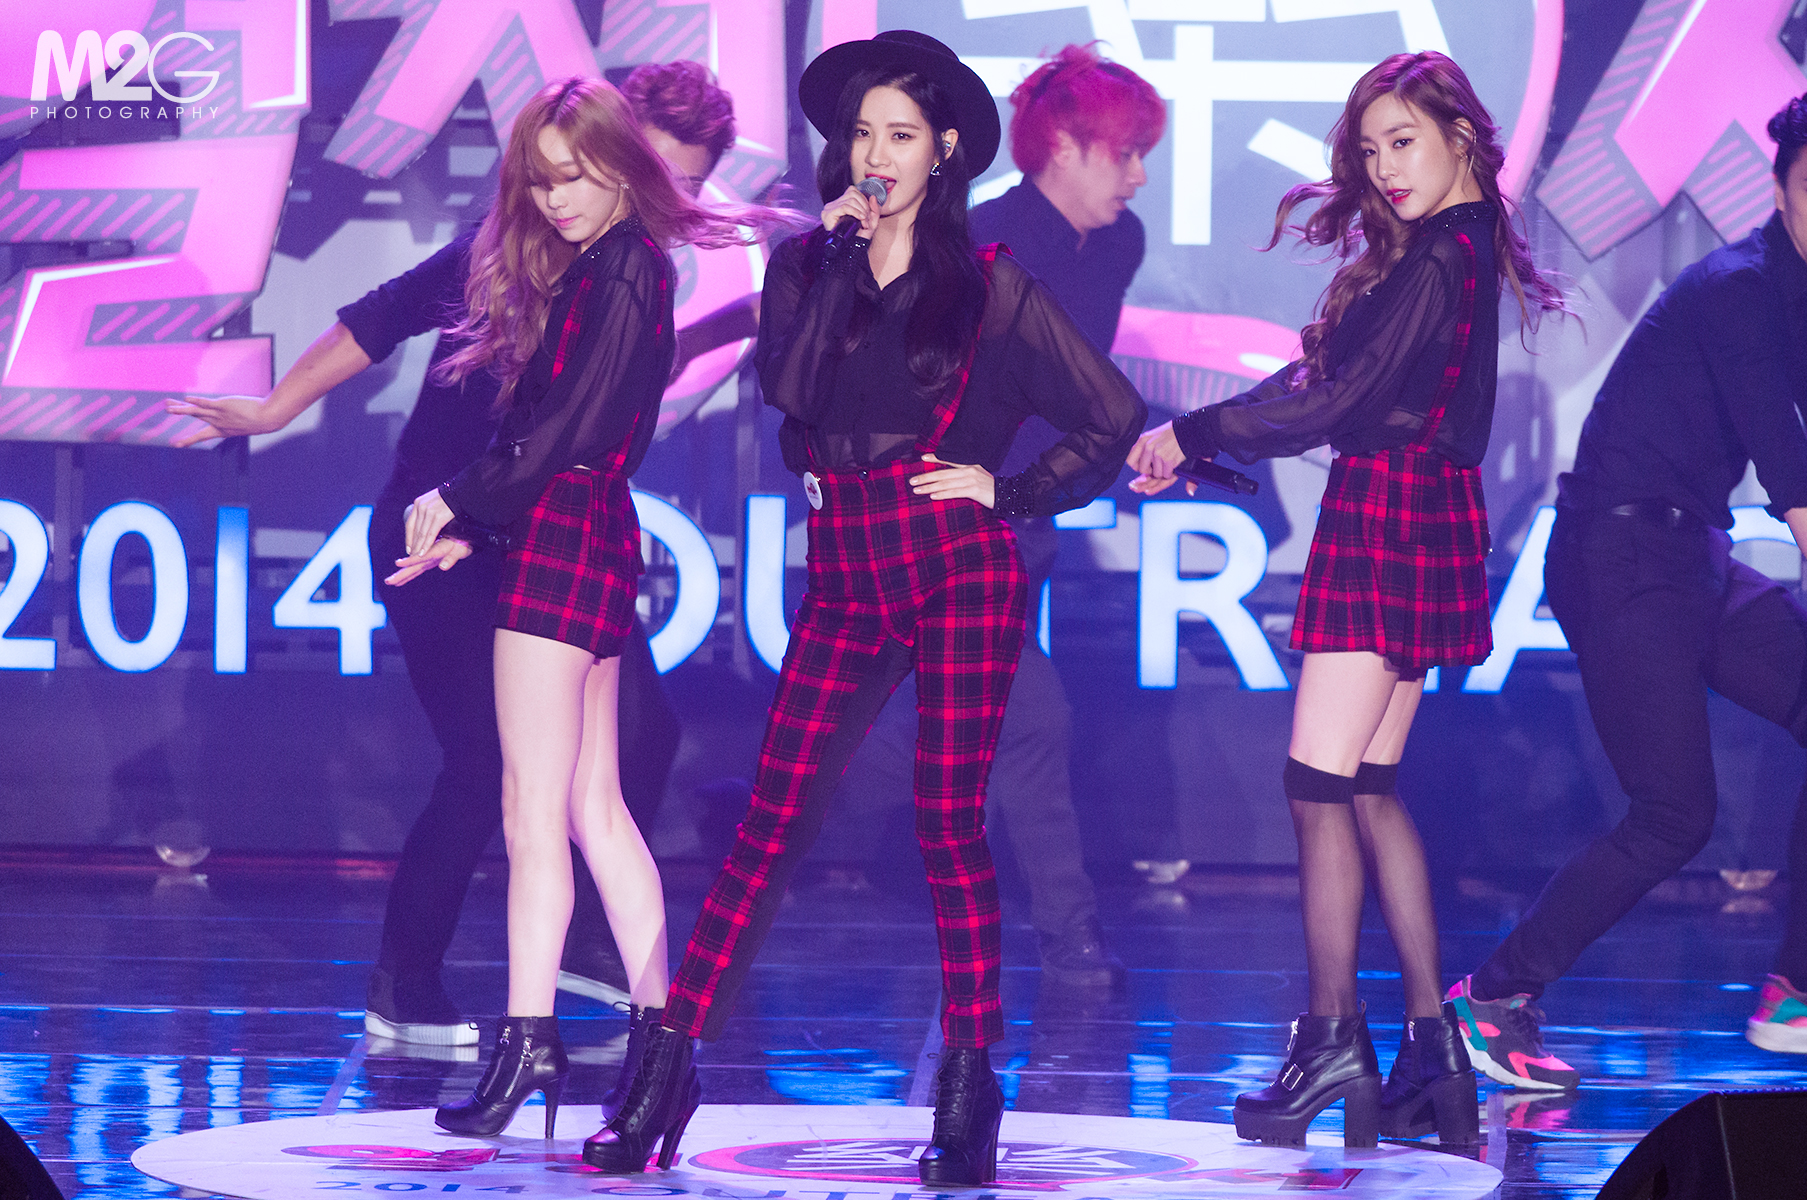 [PIC][11-11-2014]TaeTiSeo biểu diễn tại "Passion Concert 2014" ở Seoul Jamsil Gymnasium vào tối nay - Page 5 250E2C445471CC9119122D